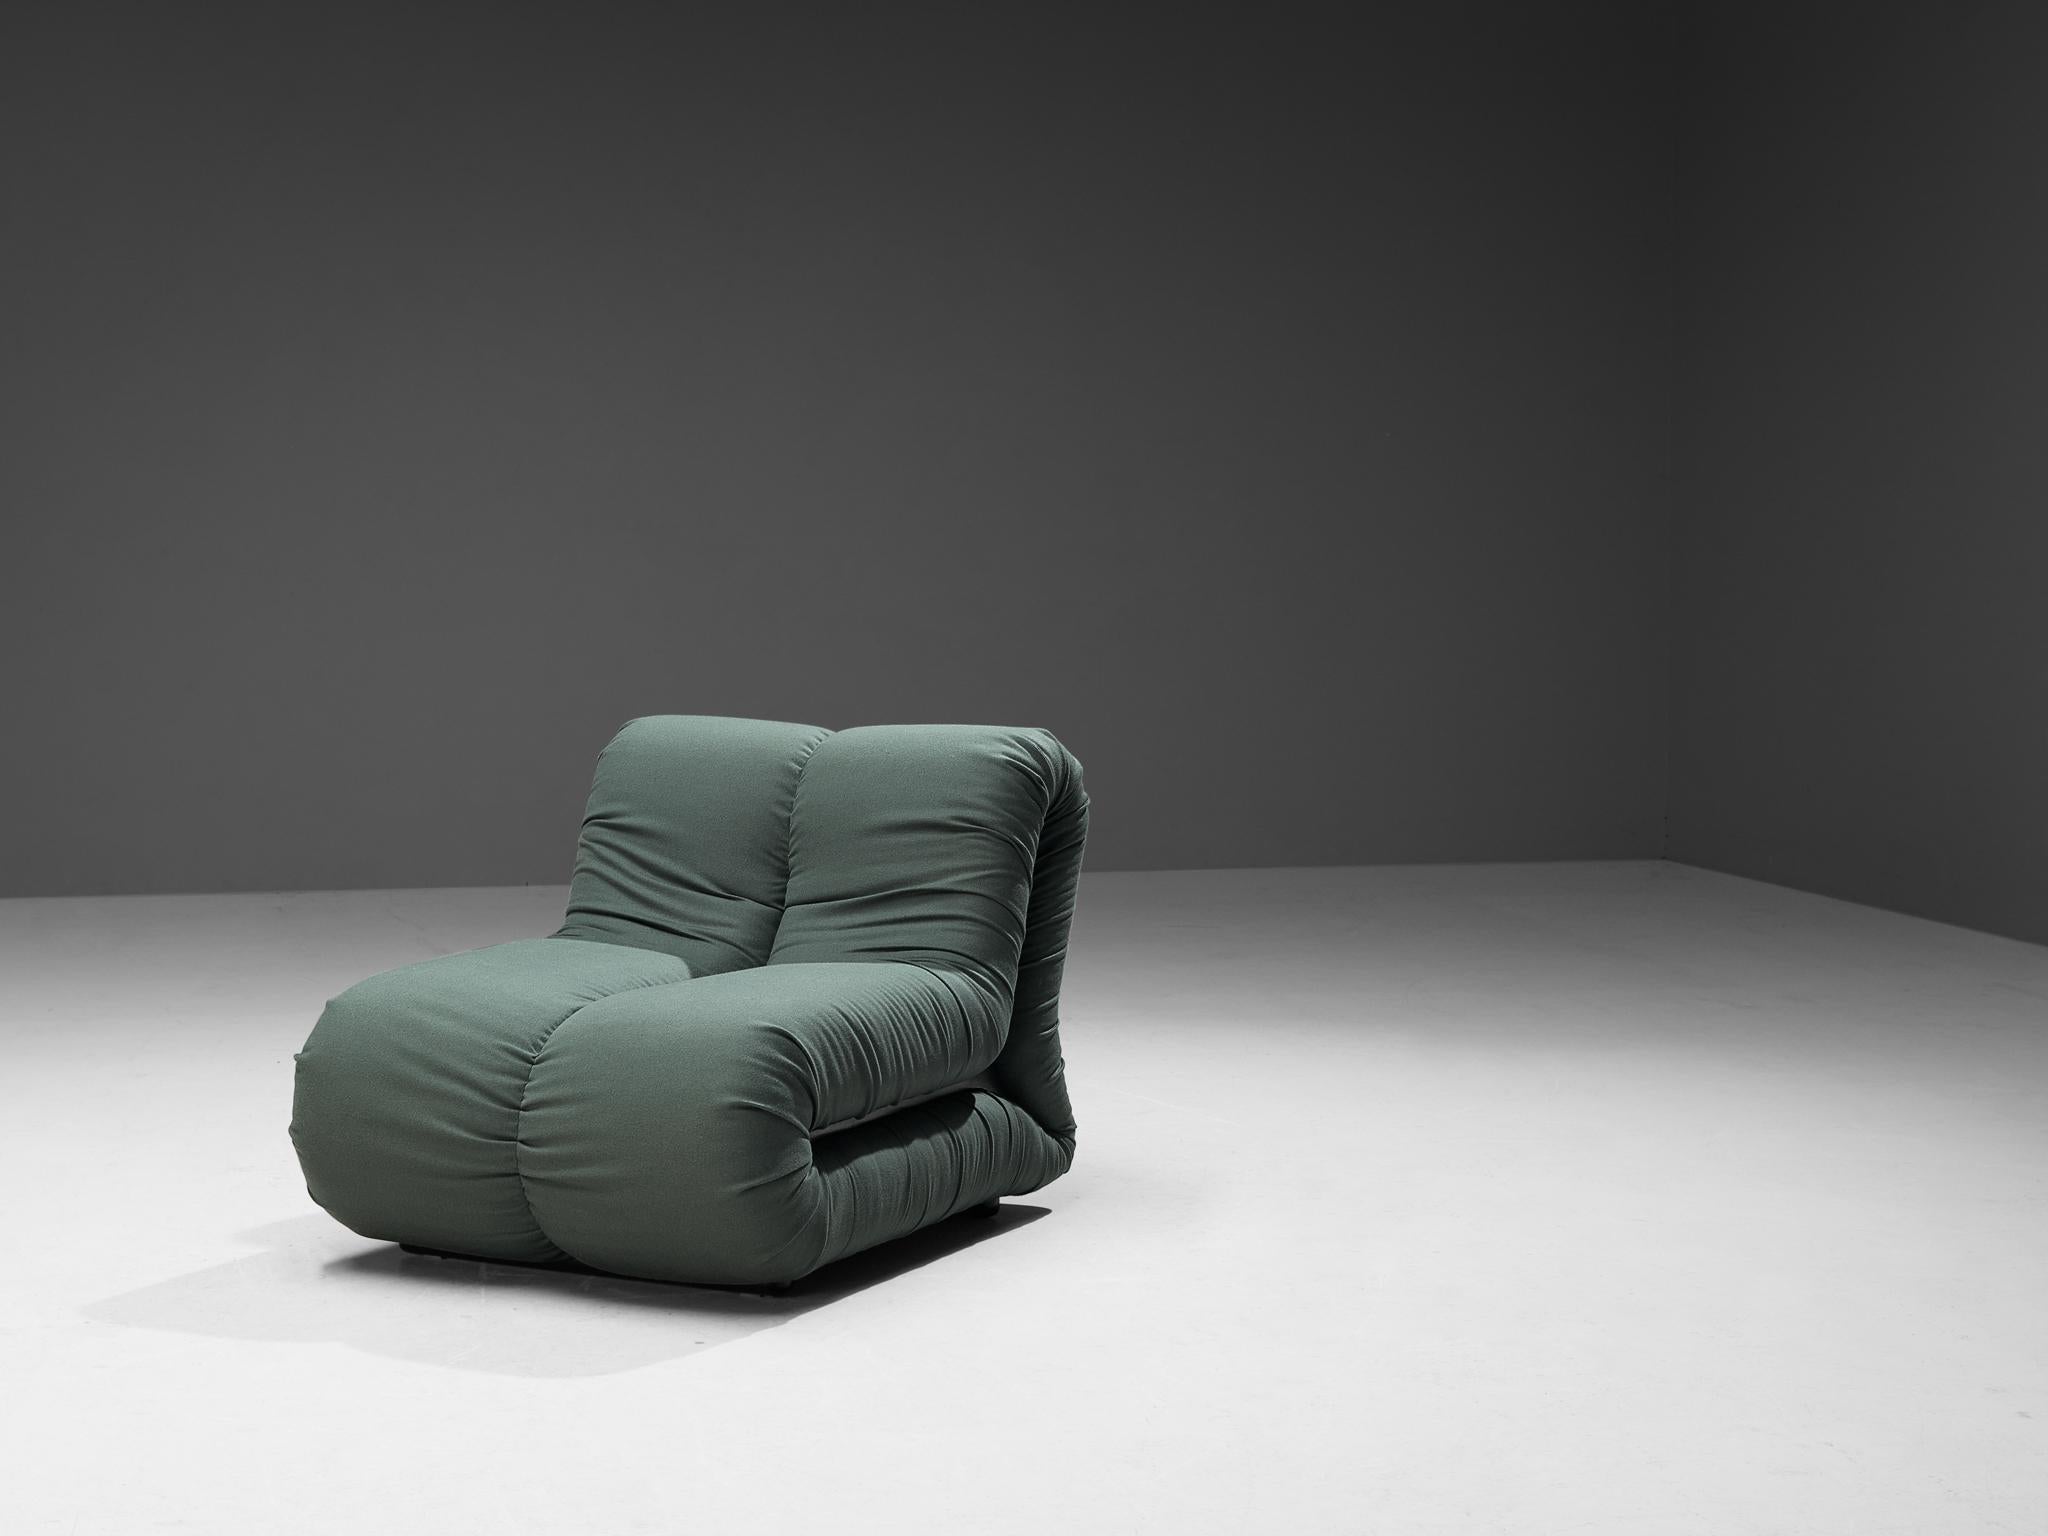 Claudio Vagnoni pour 1P, chaise longue modèle 'Pagru', tissu, plastique, Italie, 1968

Magnifique chaise longue 'Pagru' conçue par le designer italien Claudio Vagnoni, fabriquée par 1P en 1968. Cette pièce présente une forme en L avec un  volumineux